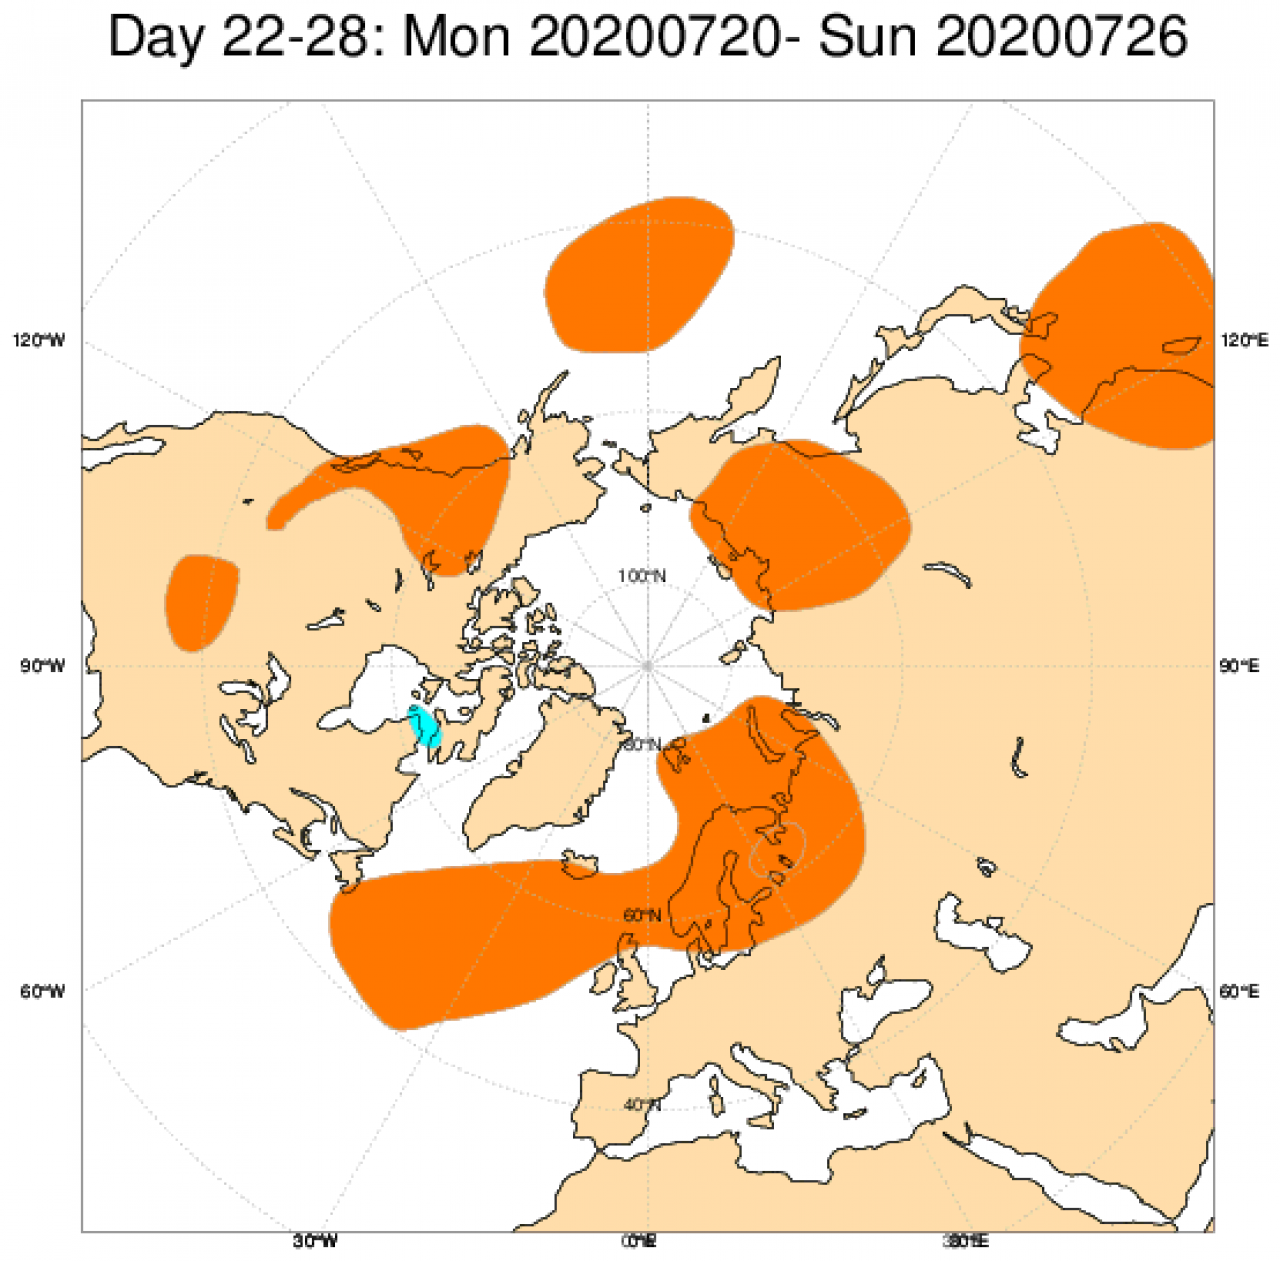  Le anomalie di geopotenziale attese in Europa secondo il modello ECMWF in riferimento al periodo 20-26 luglio